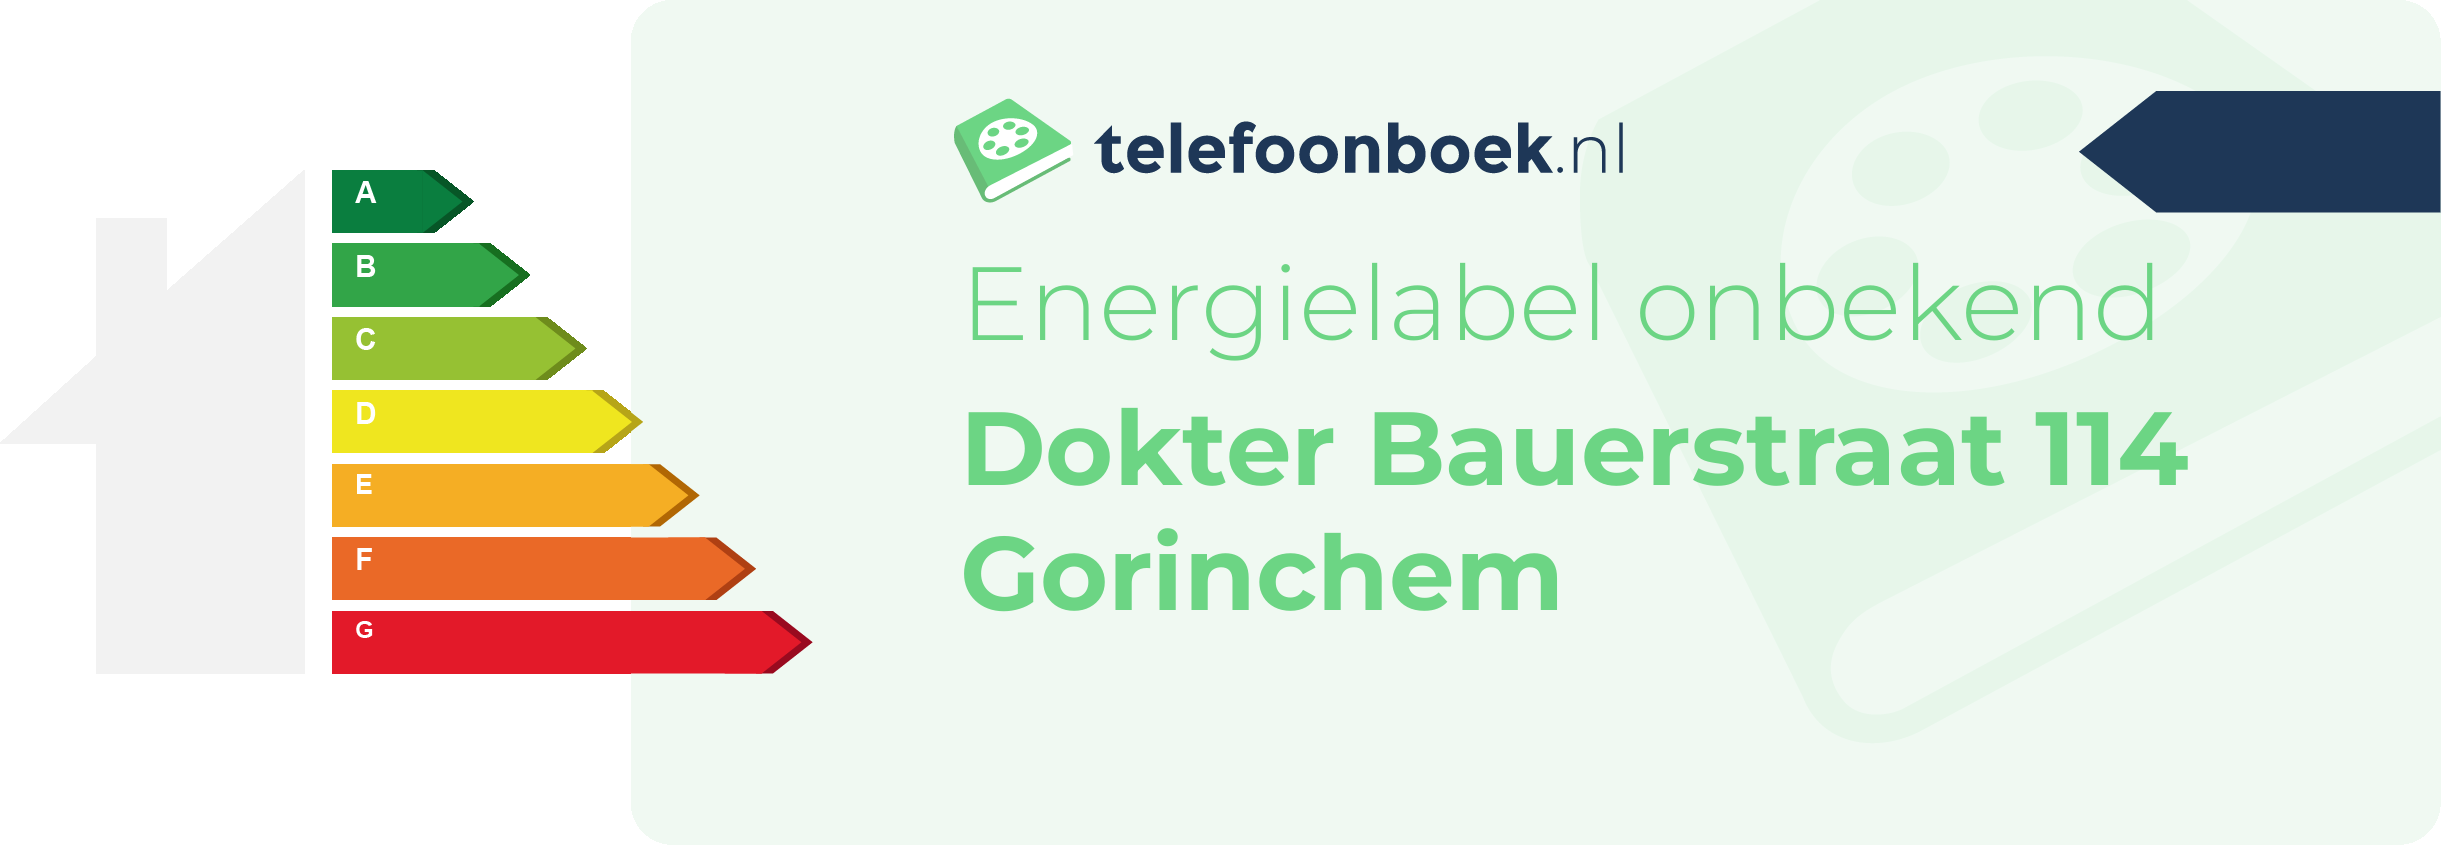 Energielabel Dokter Bauerstraat 114 Gorinchem